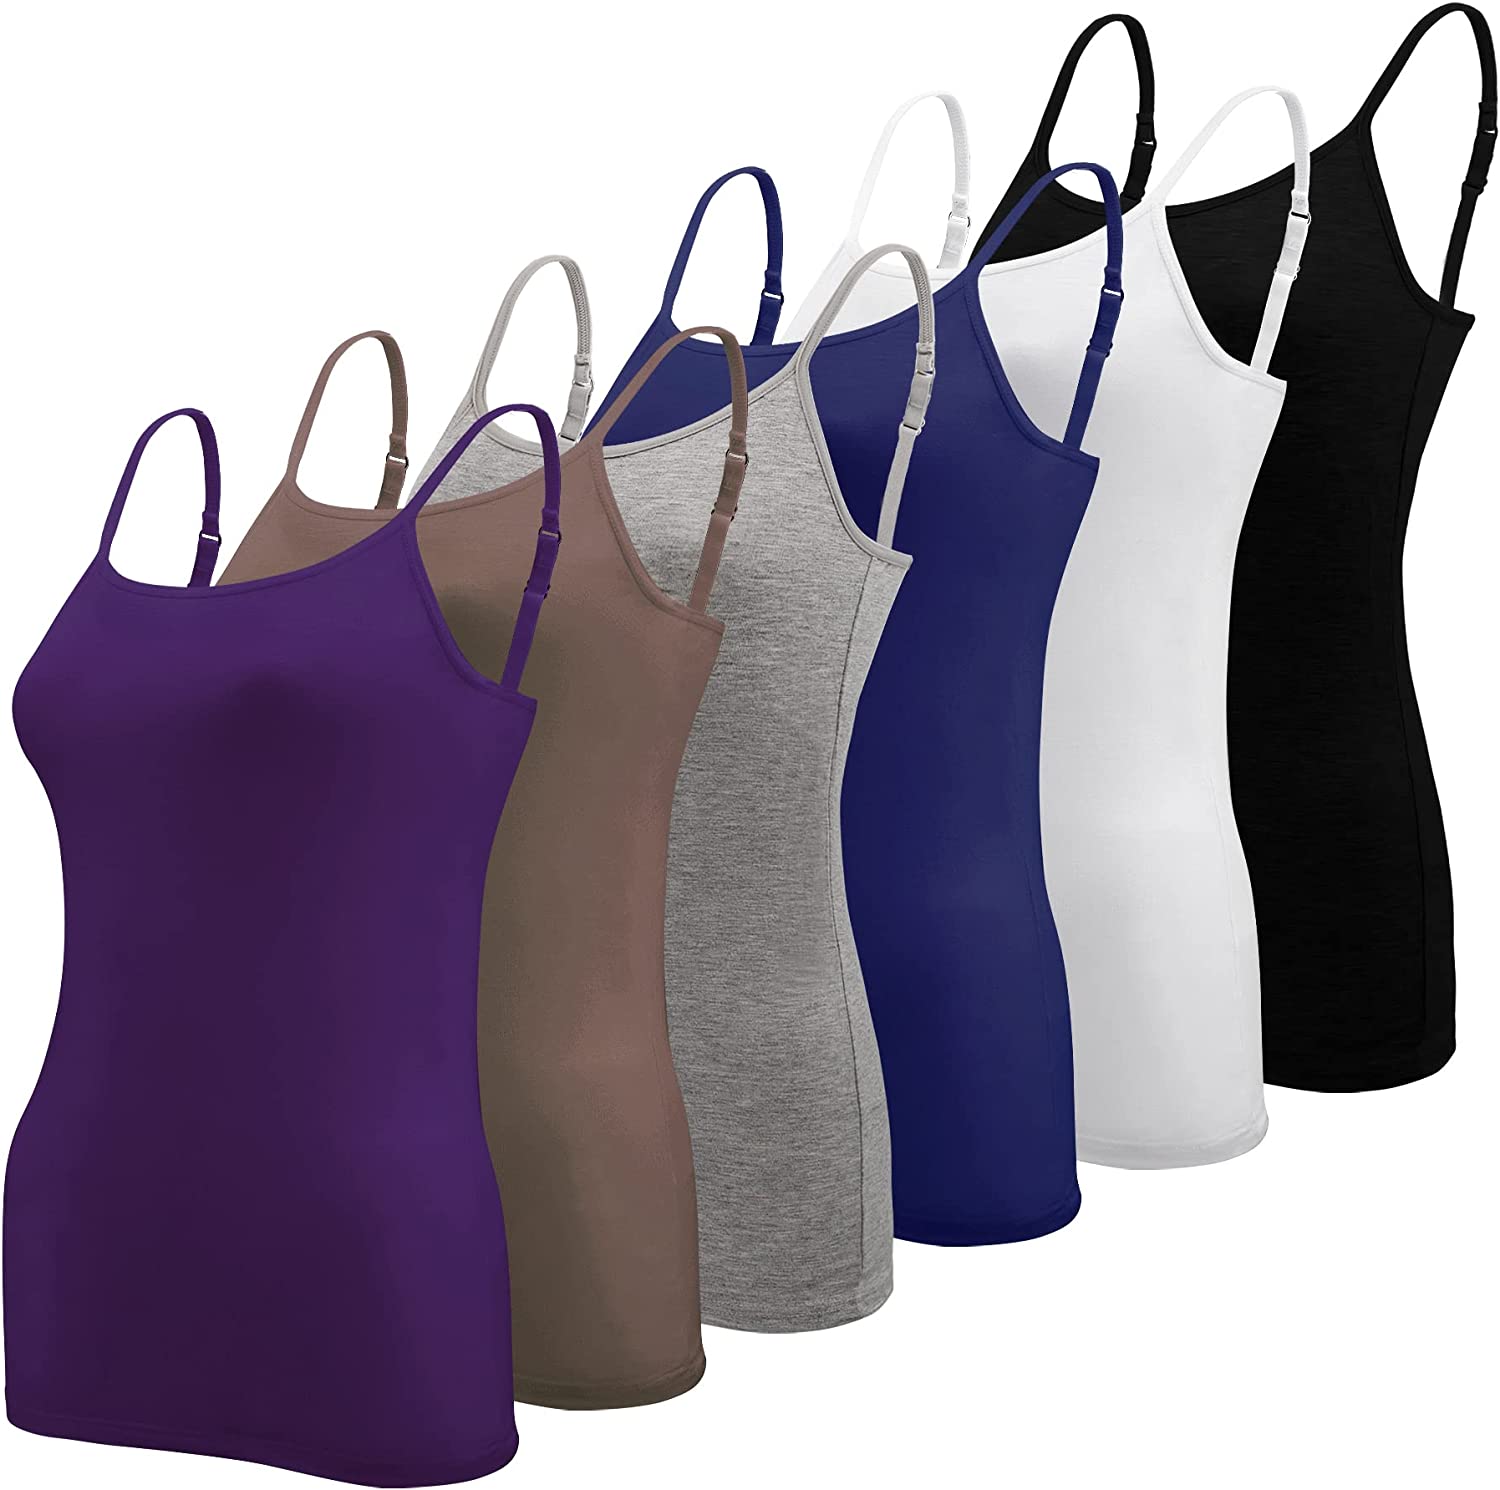 BQTQ 6 Pcs Women's Camisole Tops Undershirts Adjustable Spaghetti Strap  Tank Top